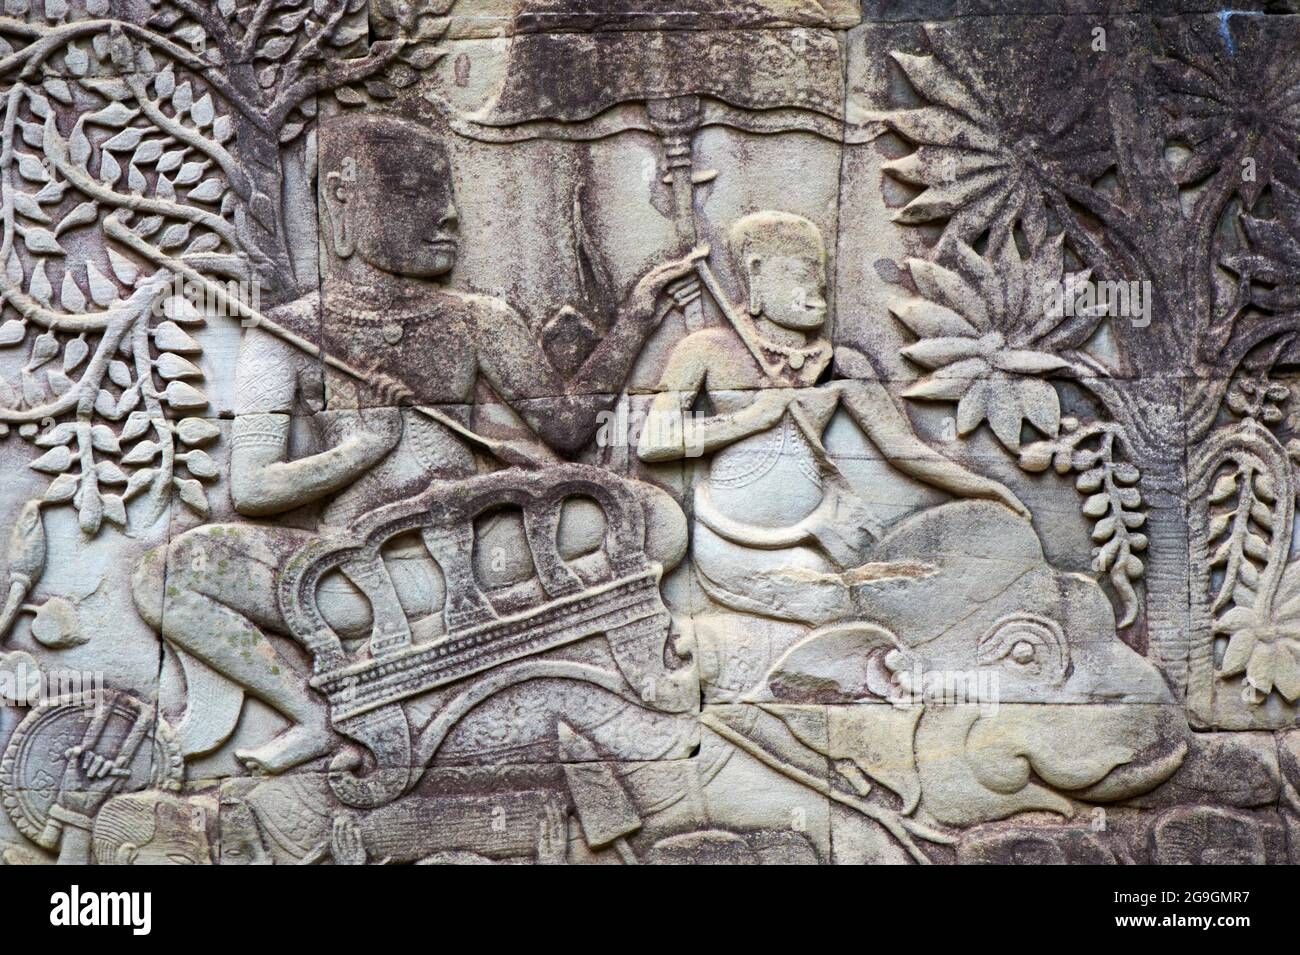 Sudeste de Asia, Camboya, provincia de Siem Reap, Angkor, Unesco Patrimonio mundial desde 1992, templo de Bayon, siglo XIII Foto de stock